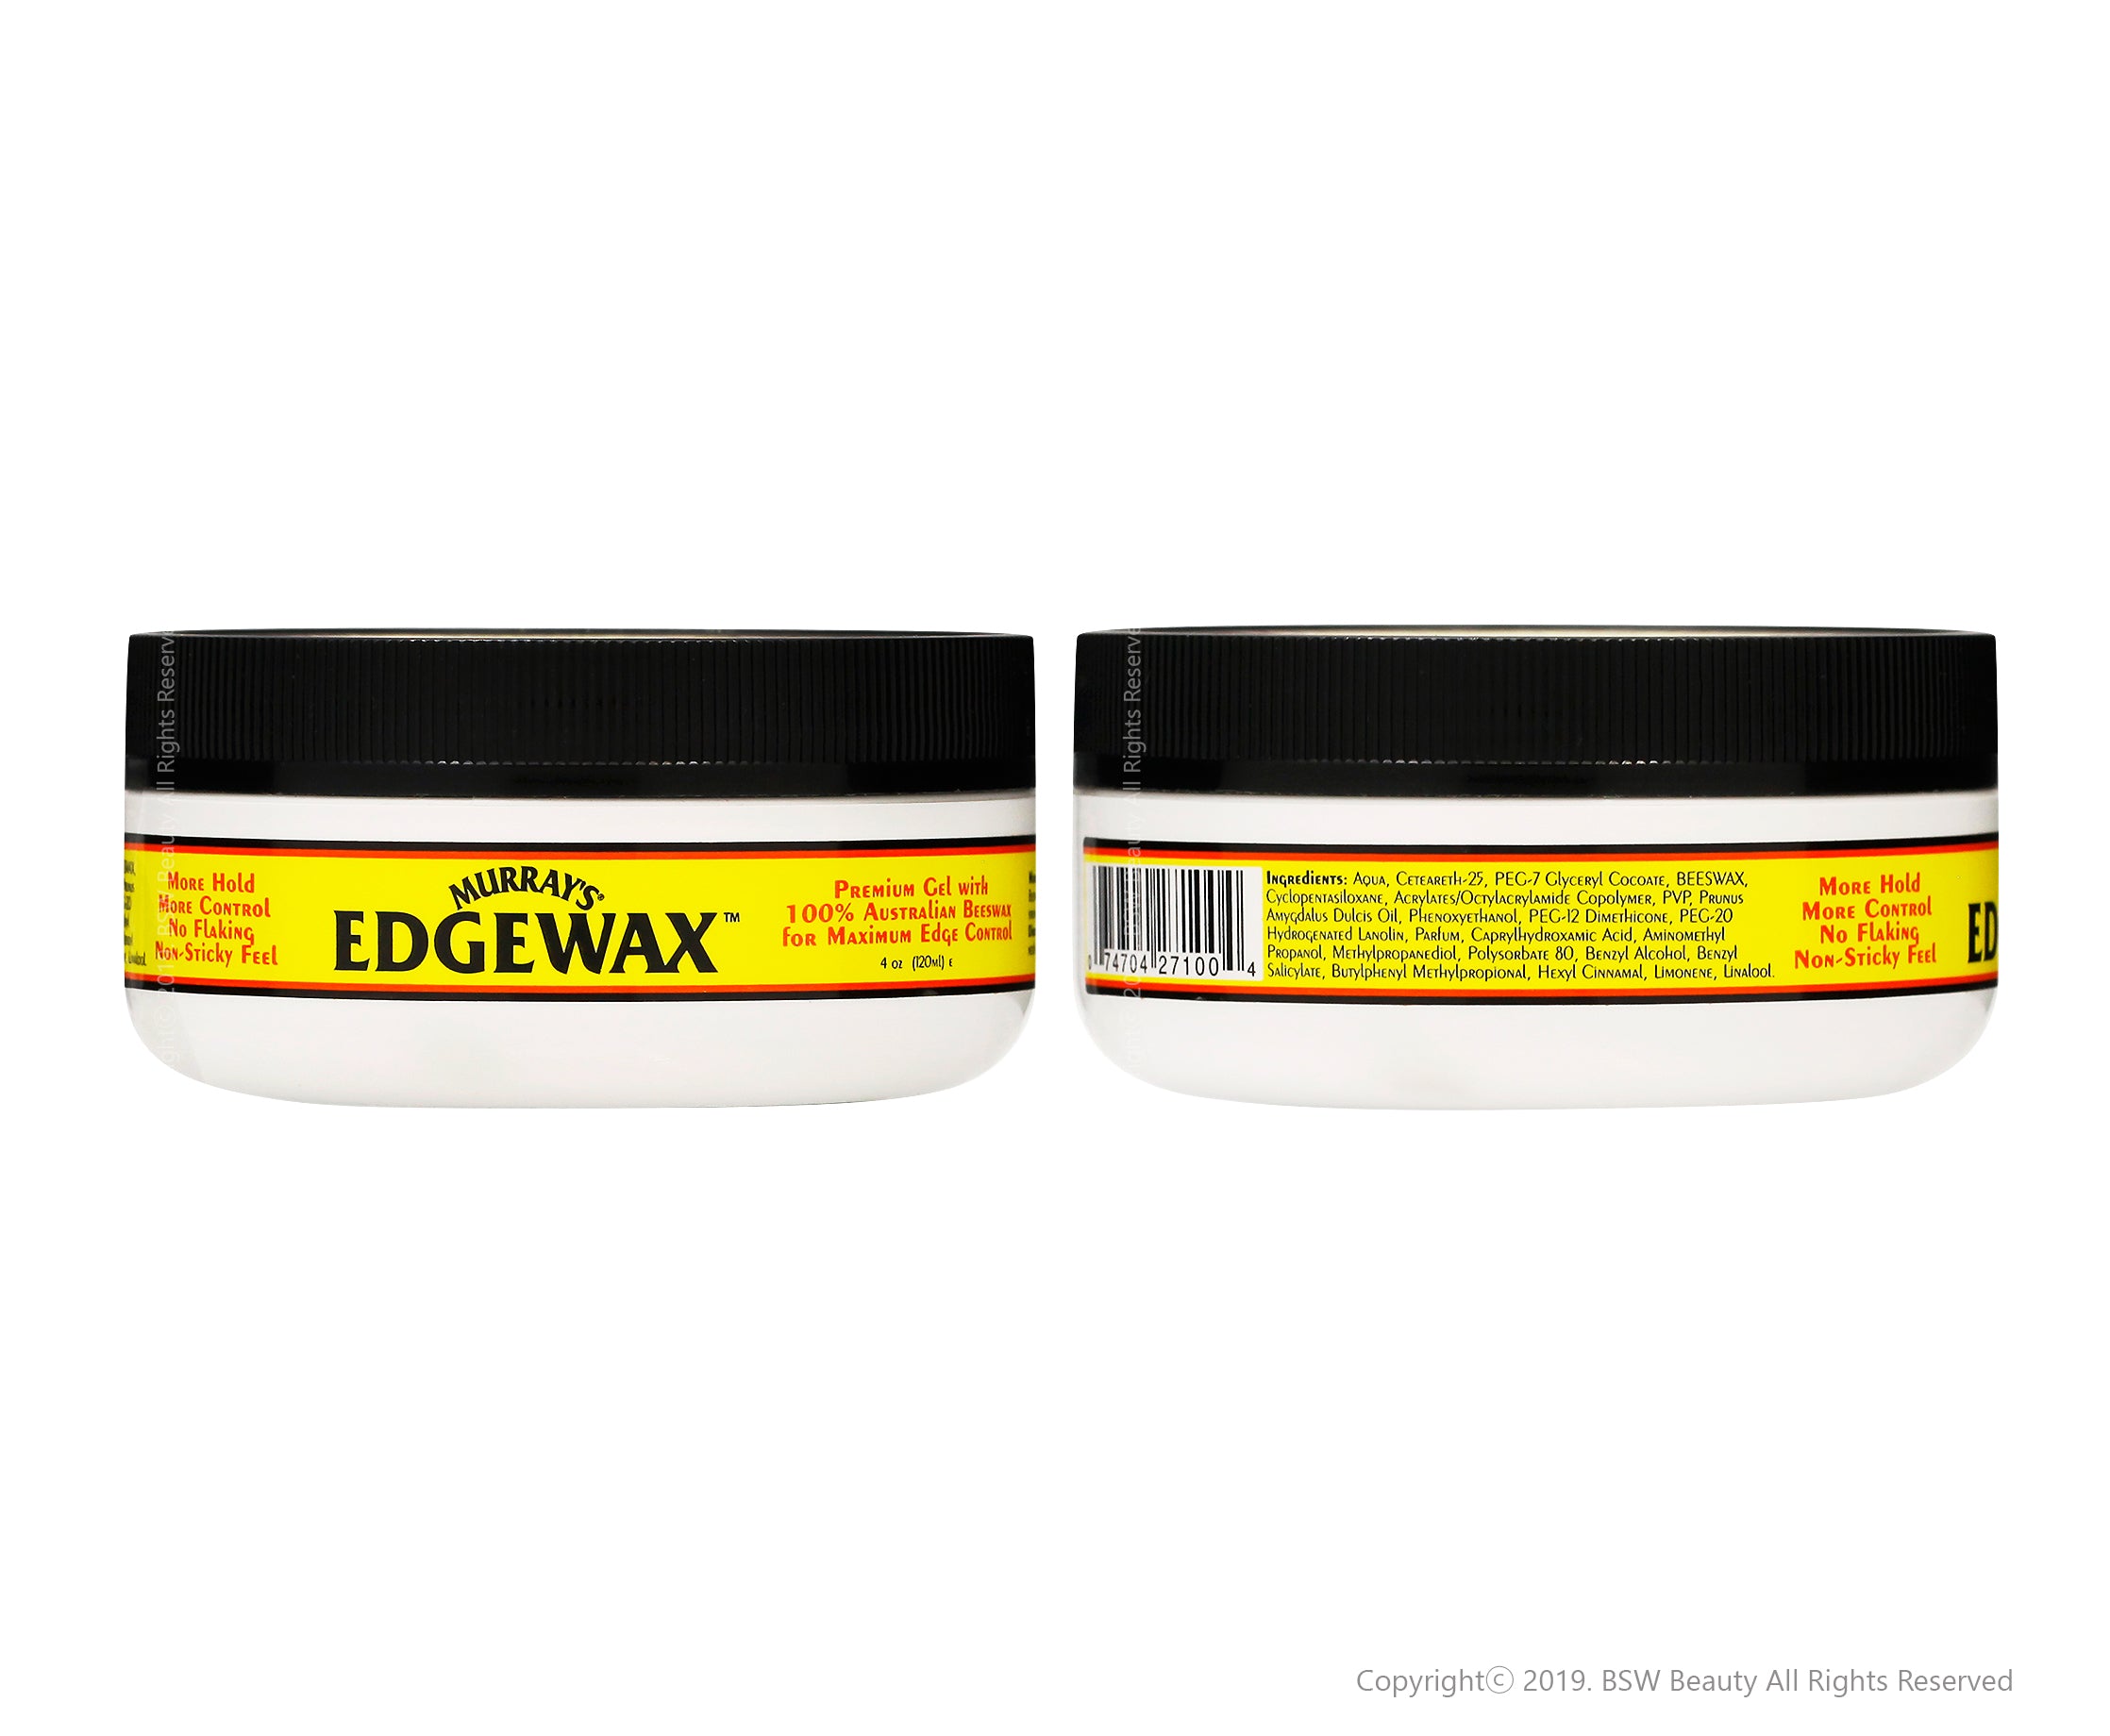 Murray's Edgewax Premium Shine Hair Styling Gel Australian Beeswax